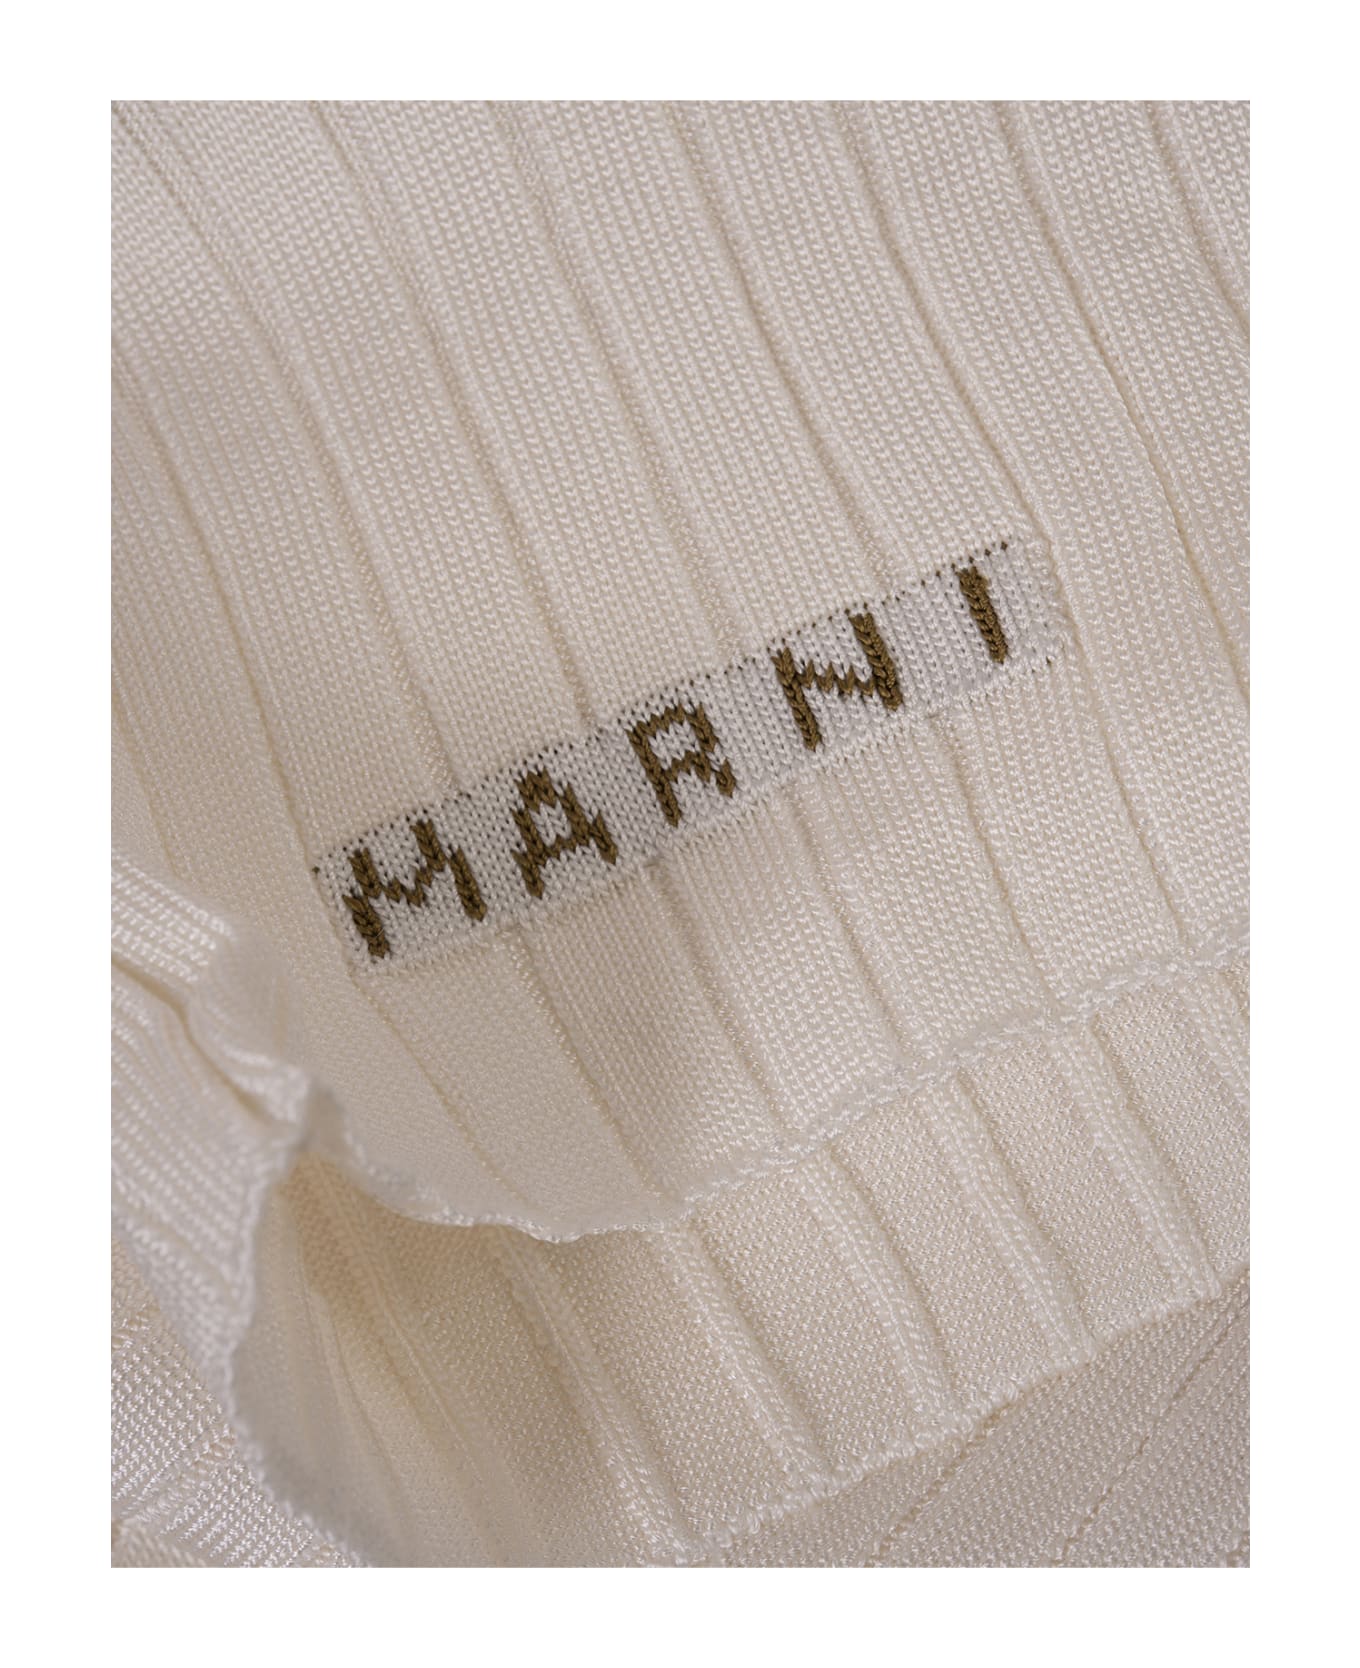 Marni White Ribbed Knit Short Cardigan - White カーディガン